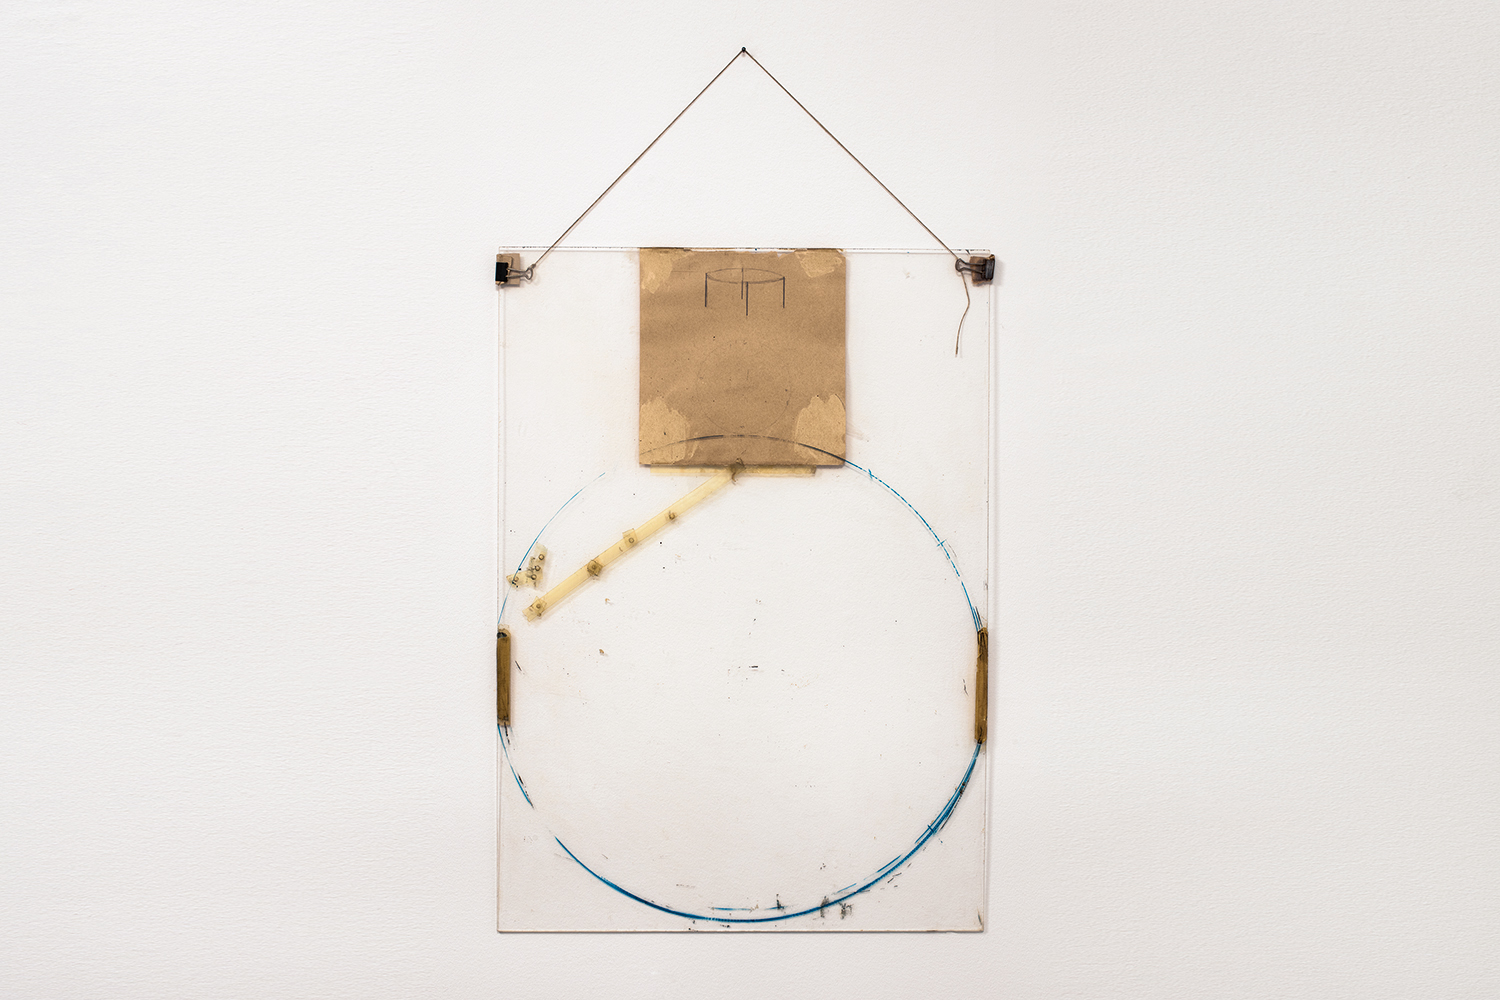  Nahum Tevet, Untitled #30, 1975. Paper, binder clips, twine, transparent tape, masking tape, pencil, marker, and wax pencil on Plexiglas, Plexiglas: 27 3/4 x 20 x 7/16 in. (70.49 x 50.8 x 1.1 cm), Installed: 35 5/8 x 20 x 7/16 in. (90.5 x 50.8 x 1.1